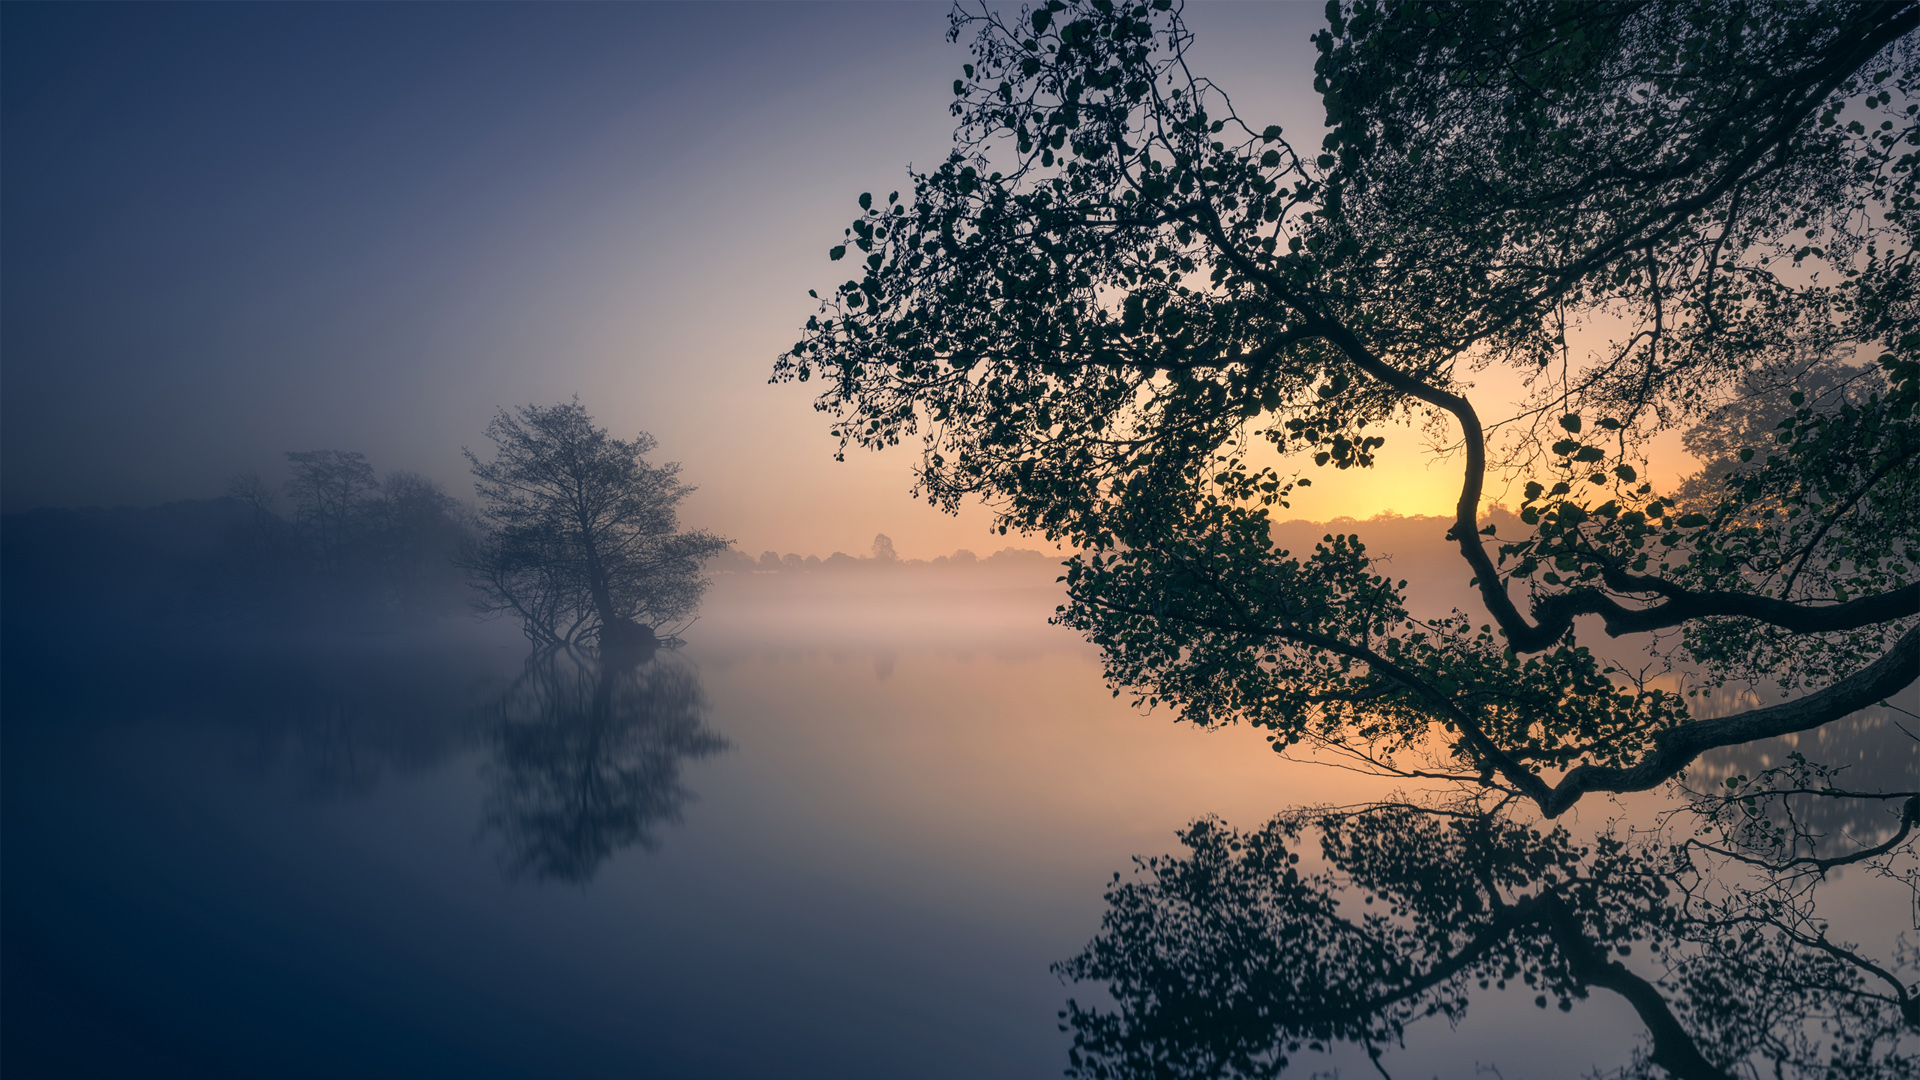 早晨,湖泊,树木,雾,风景桌面壁纸